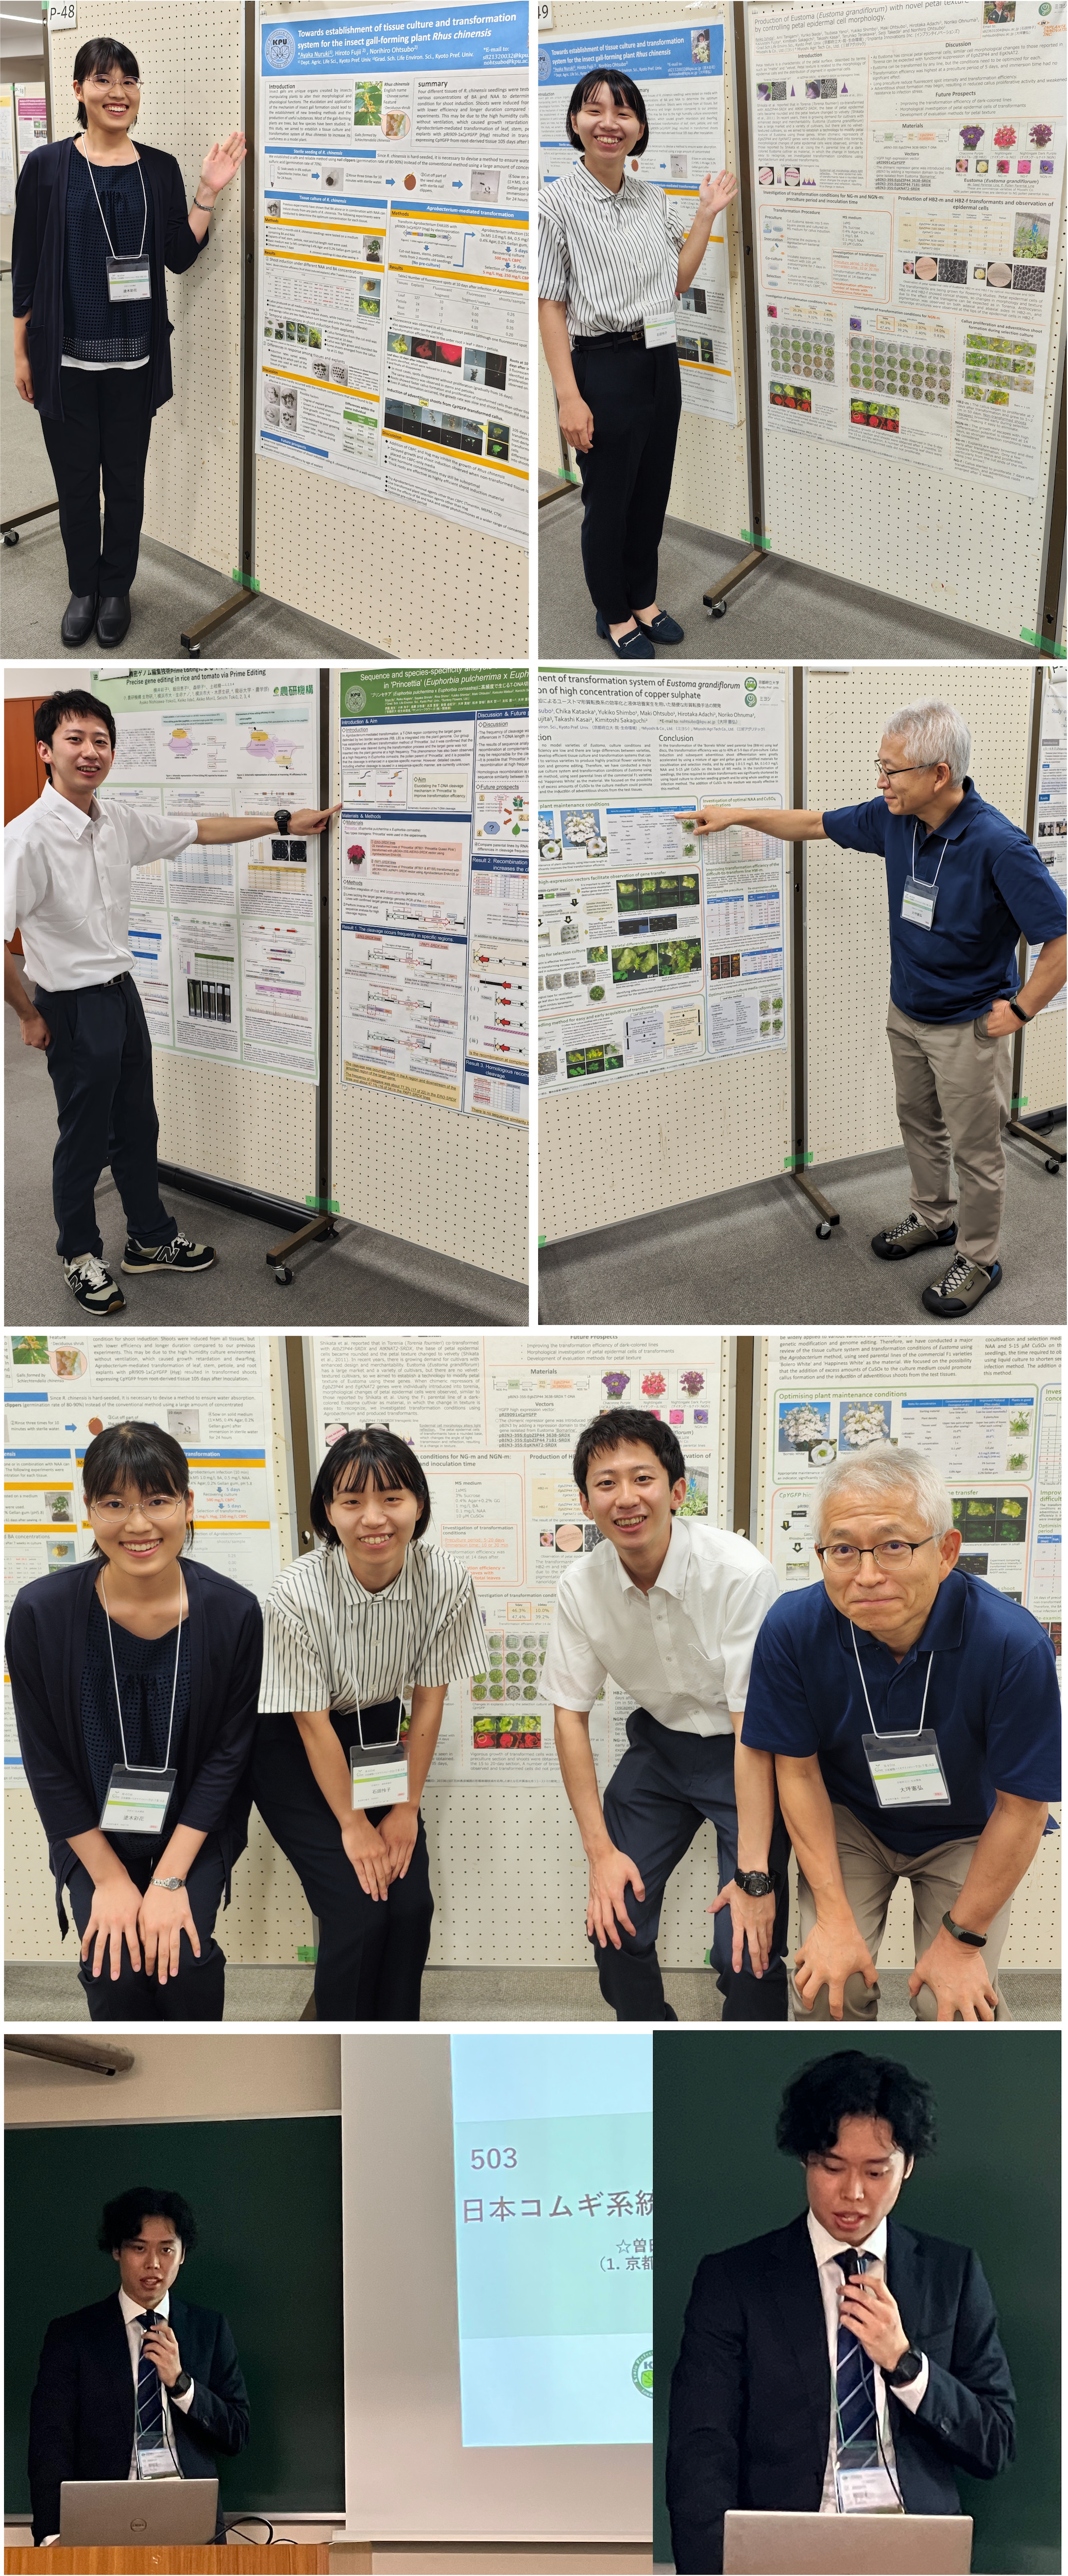 日本植物バイオテクノロジー学会、日本育種学会に参加しました。